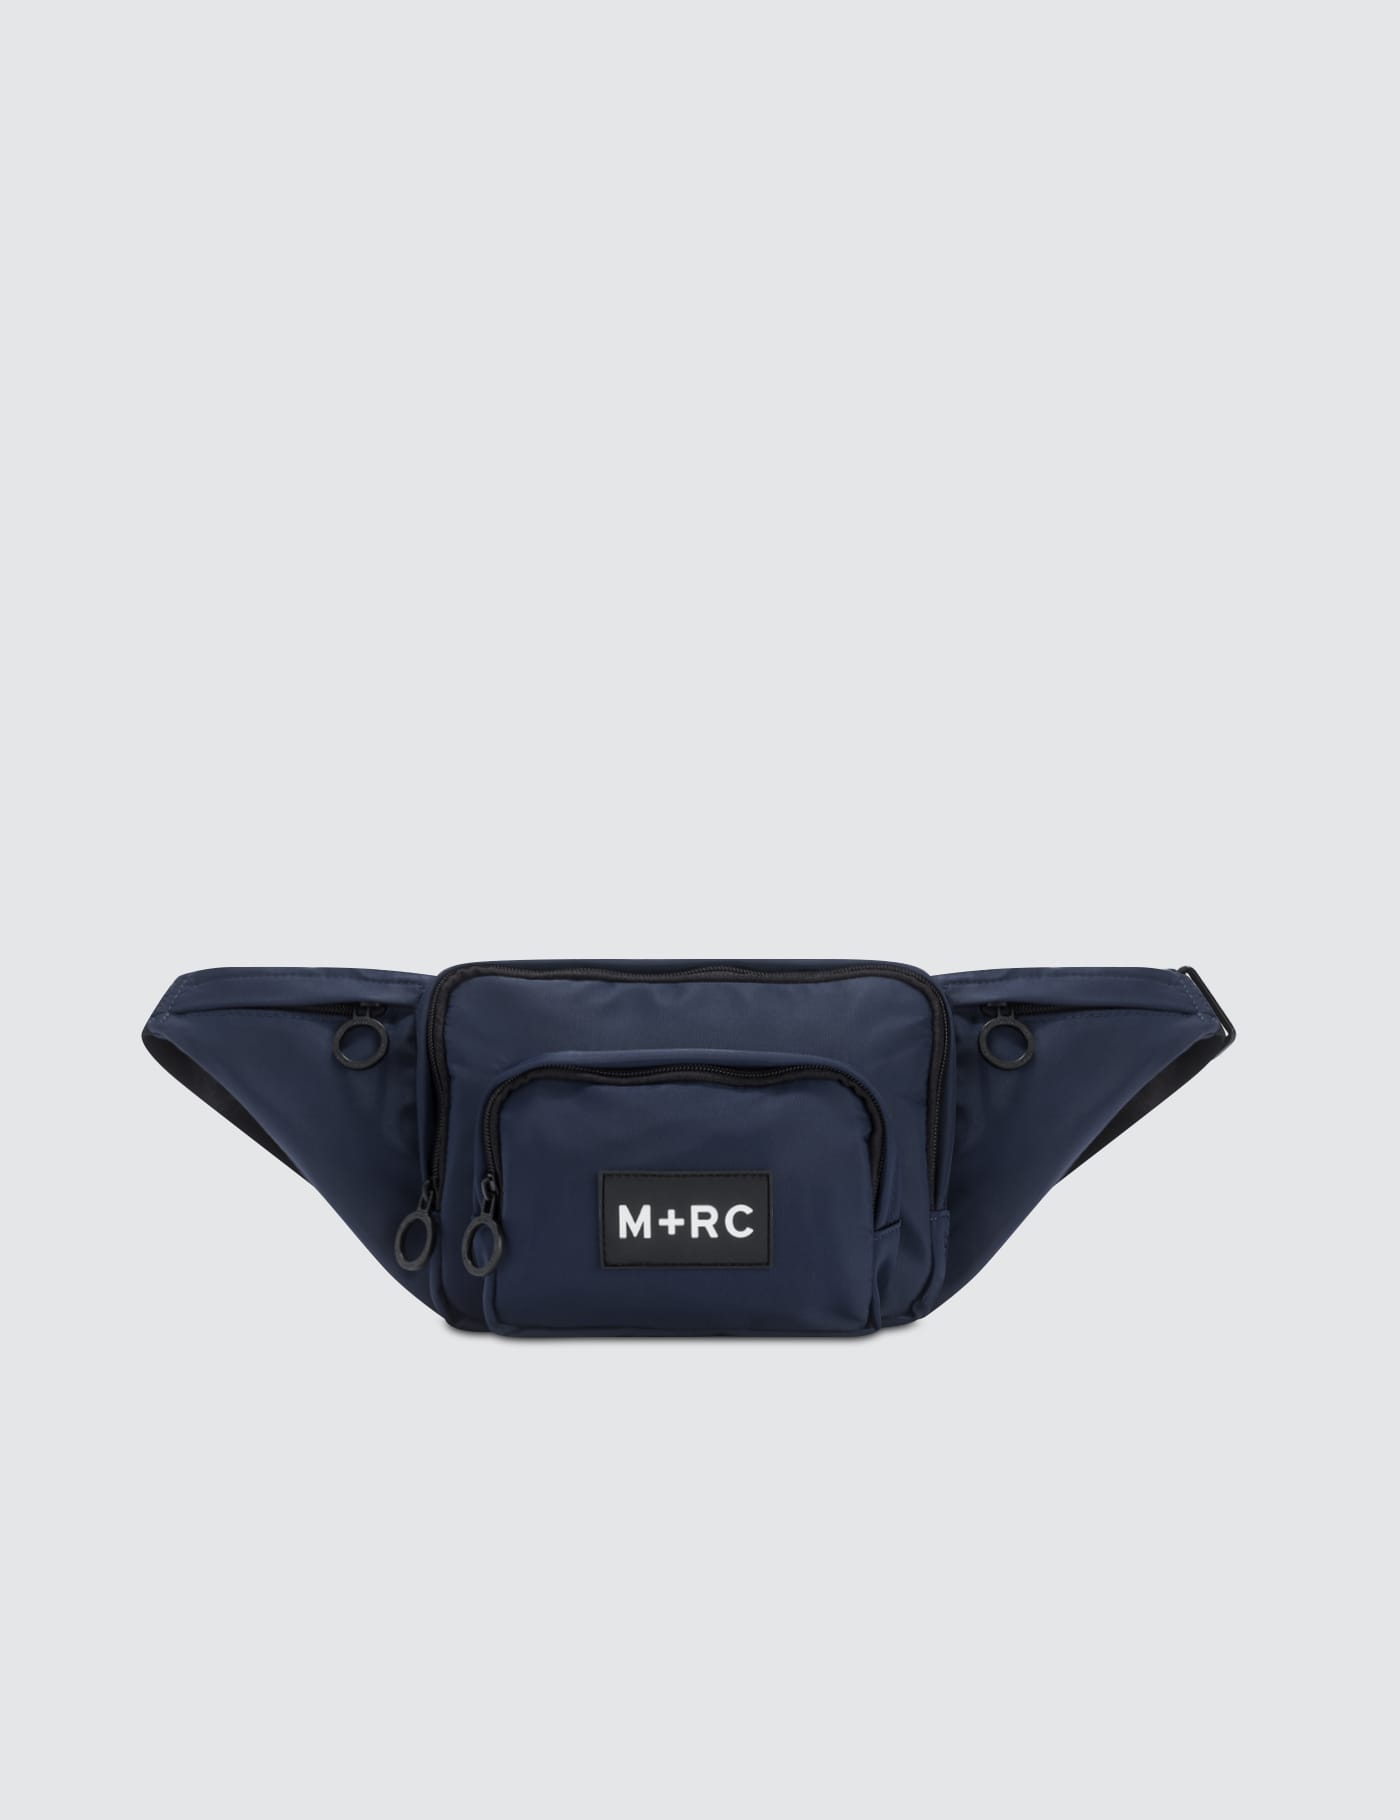 M+RC NOIR belt bag blackバッグ